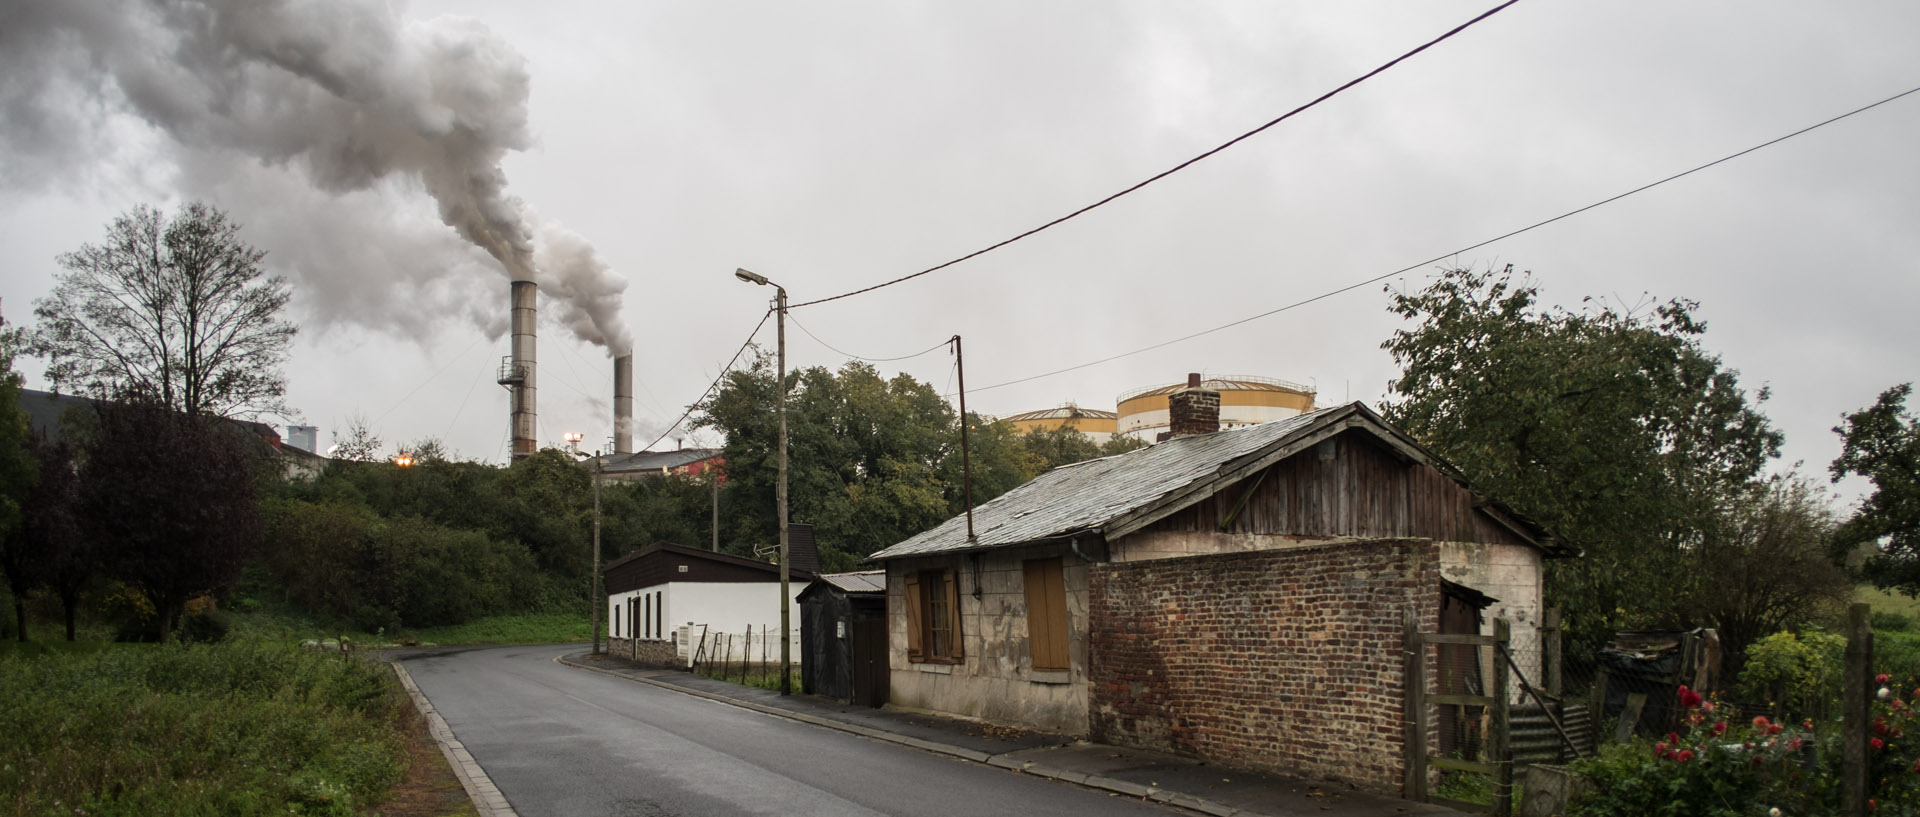 Vendredi 1er novembre 2013, 7:50, usine de sucre Saint-Louis, Roye